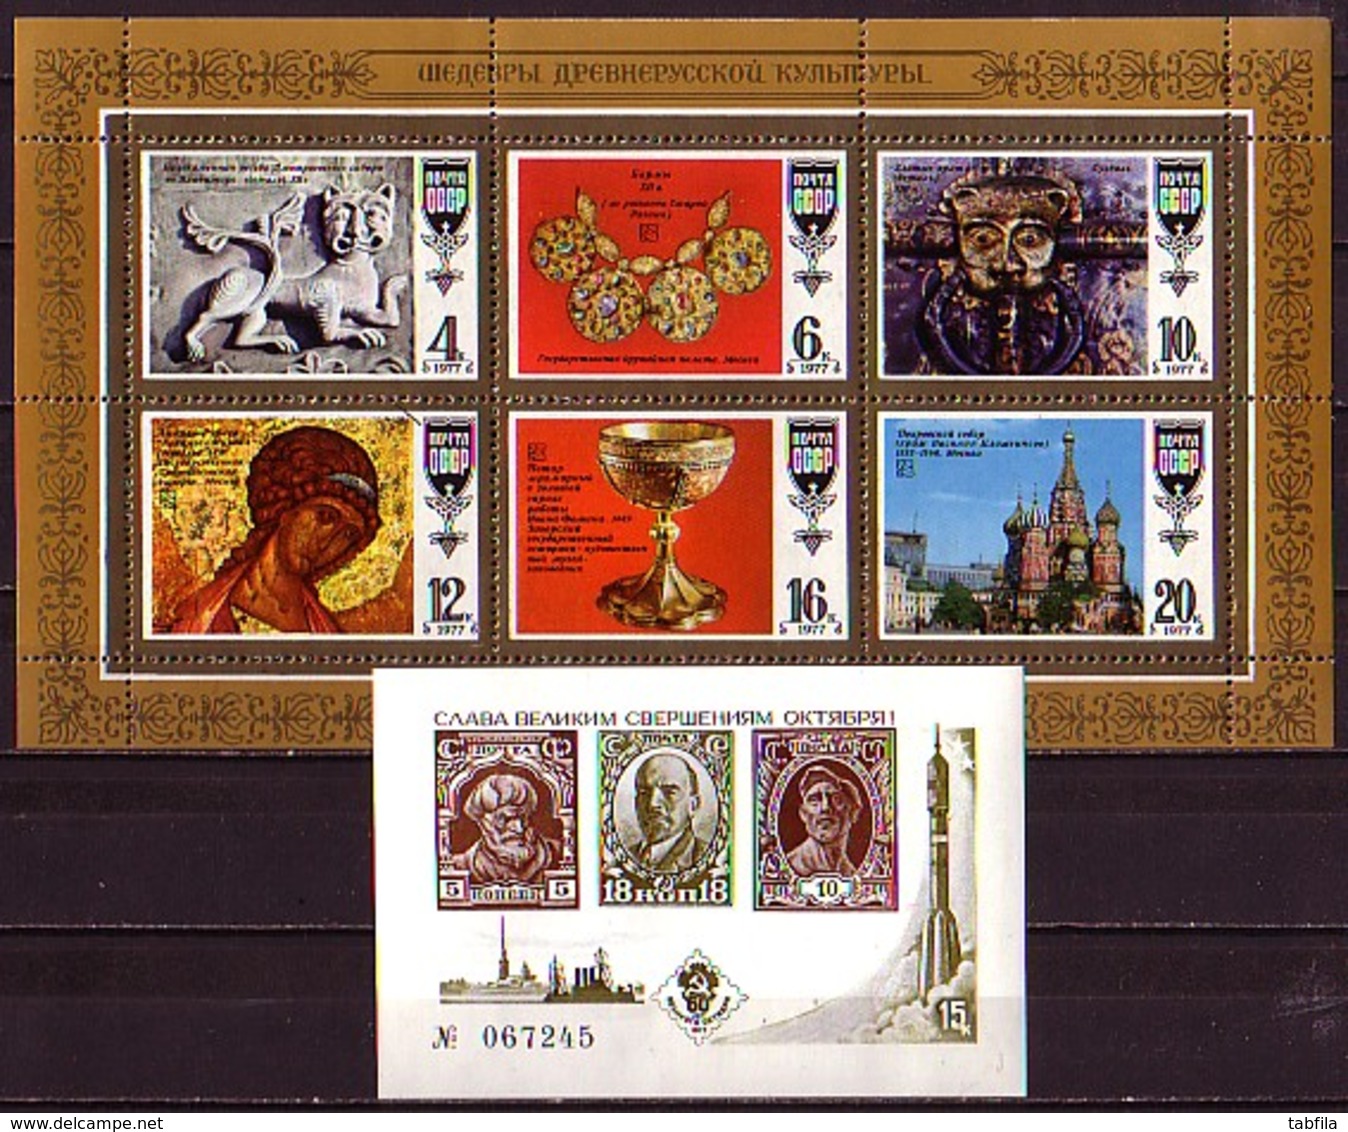 RUSSIA - 1977- Anne Complet'77 - Mi 4568 - 4691 Sans 4601,4676 + Bl 118/25 + PF + Bl Souvenir - 100.00EU Port Free - Annate Complete